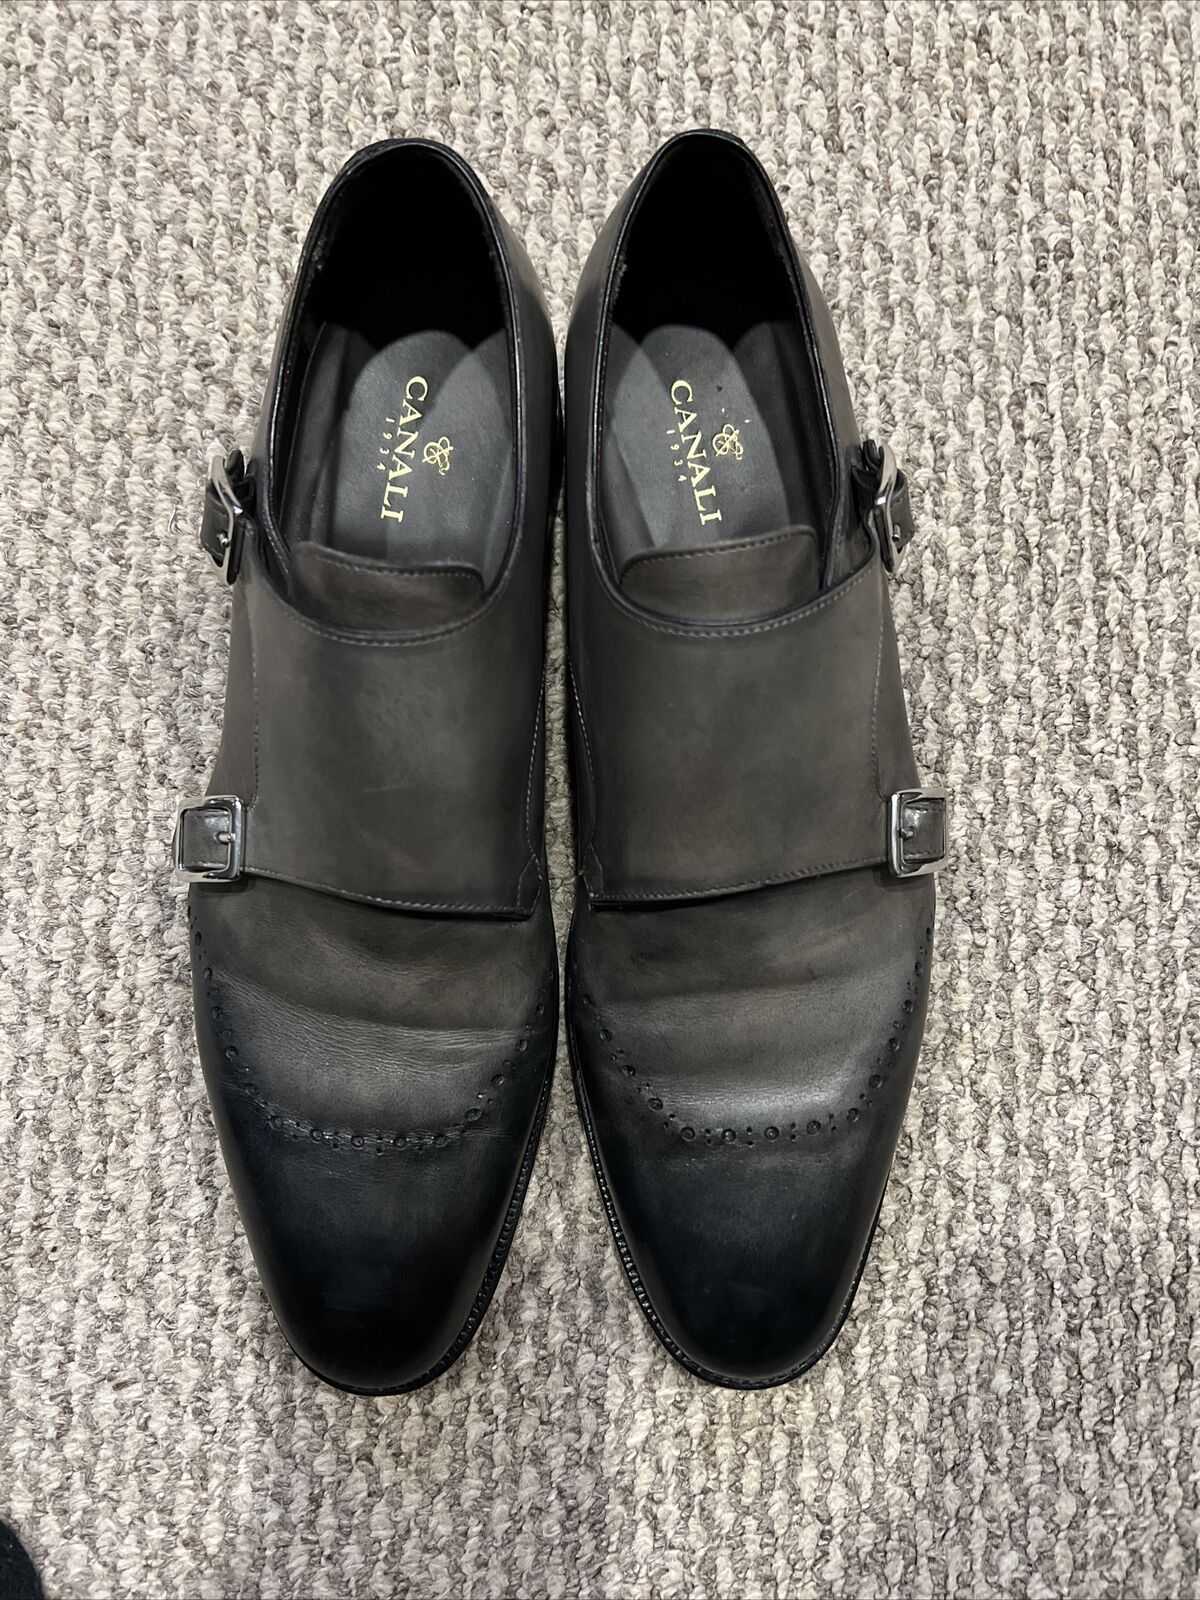 Canali Mens shoes gray color double monkstrap siz… - image 9